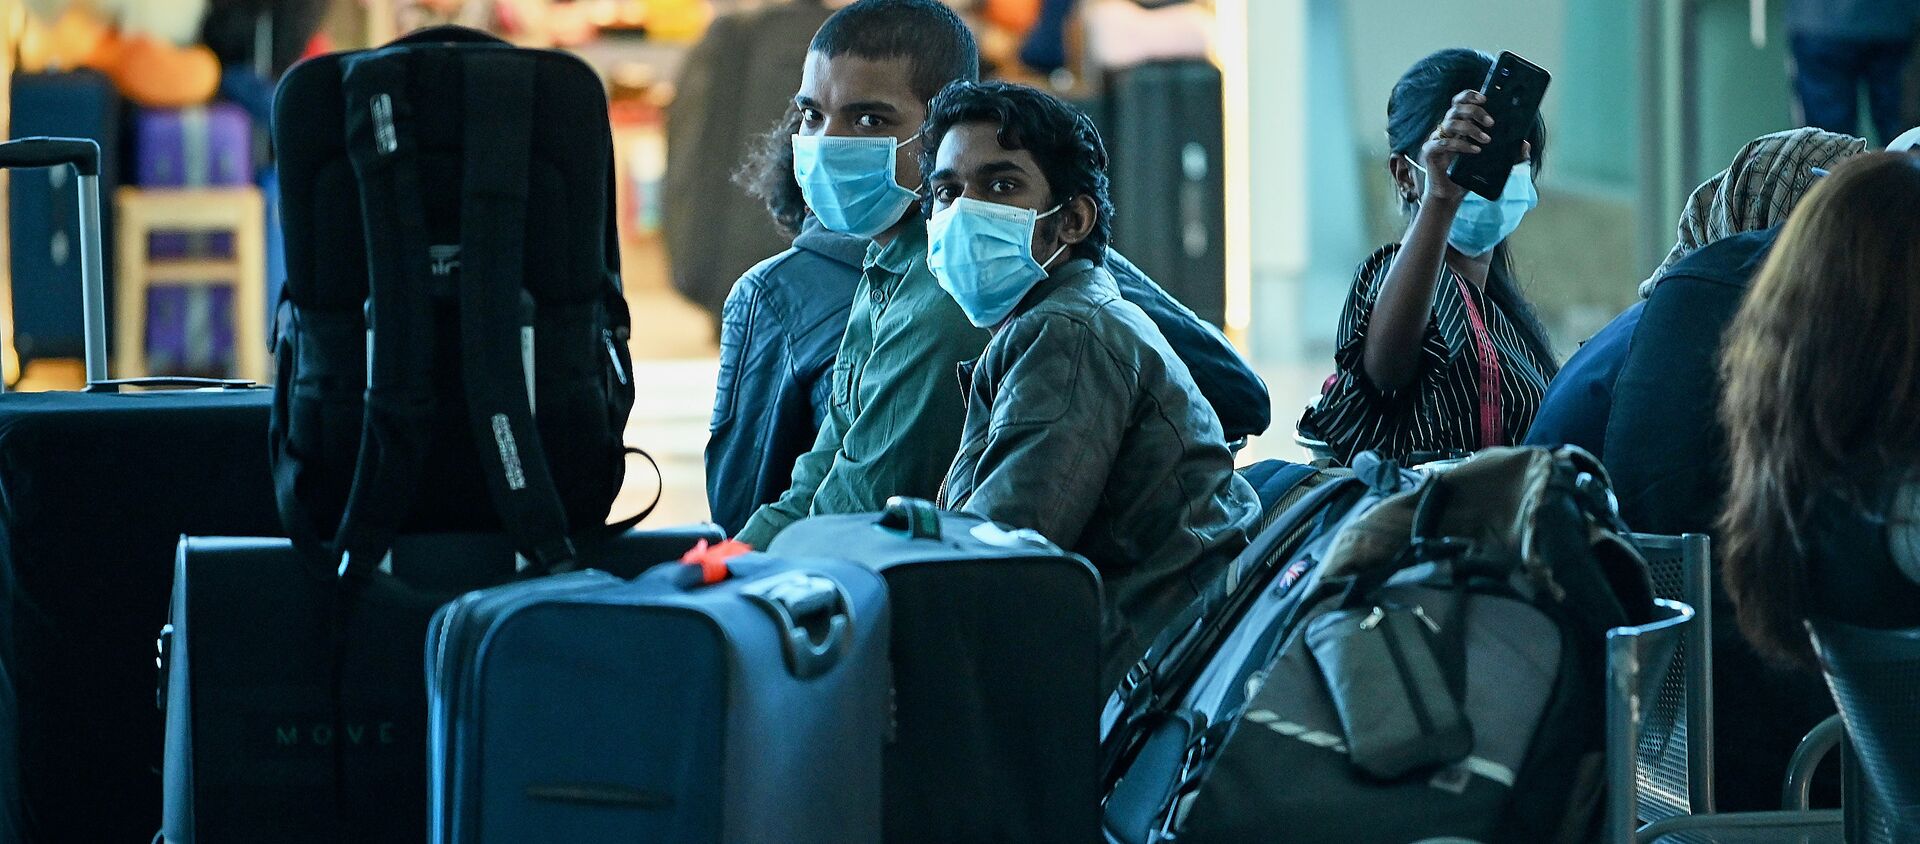 Туристы в масках в зале ожидания в тбилисском аэропорту. Власти Грузии принимают меры против коронавируса - Sputnik Грузия, 1920, 14.04.2021